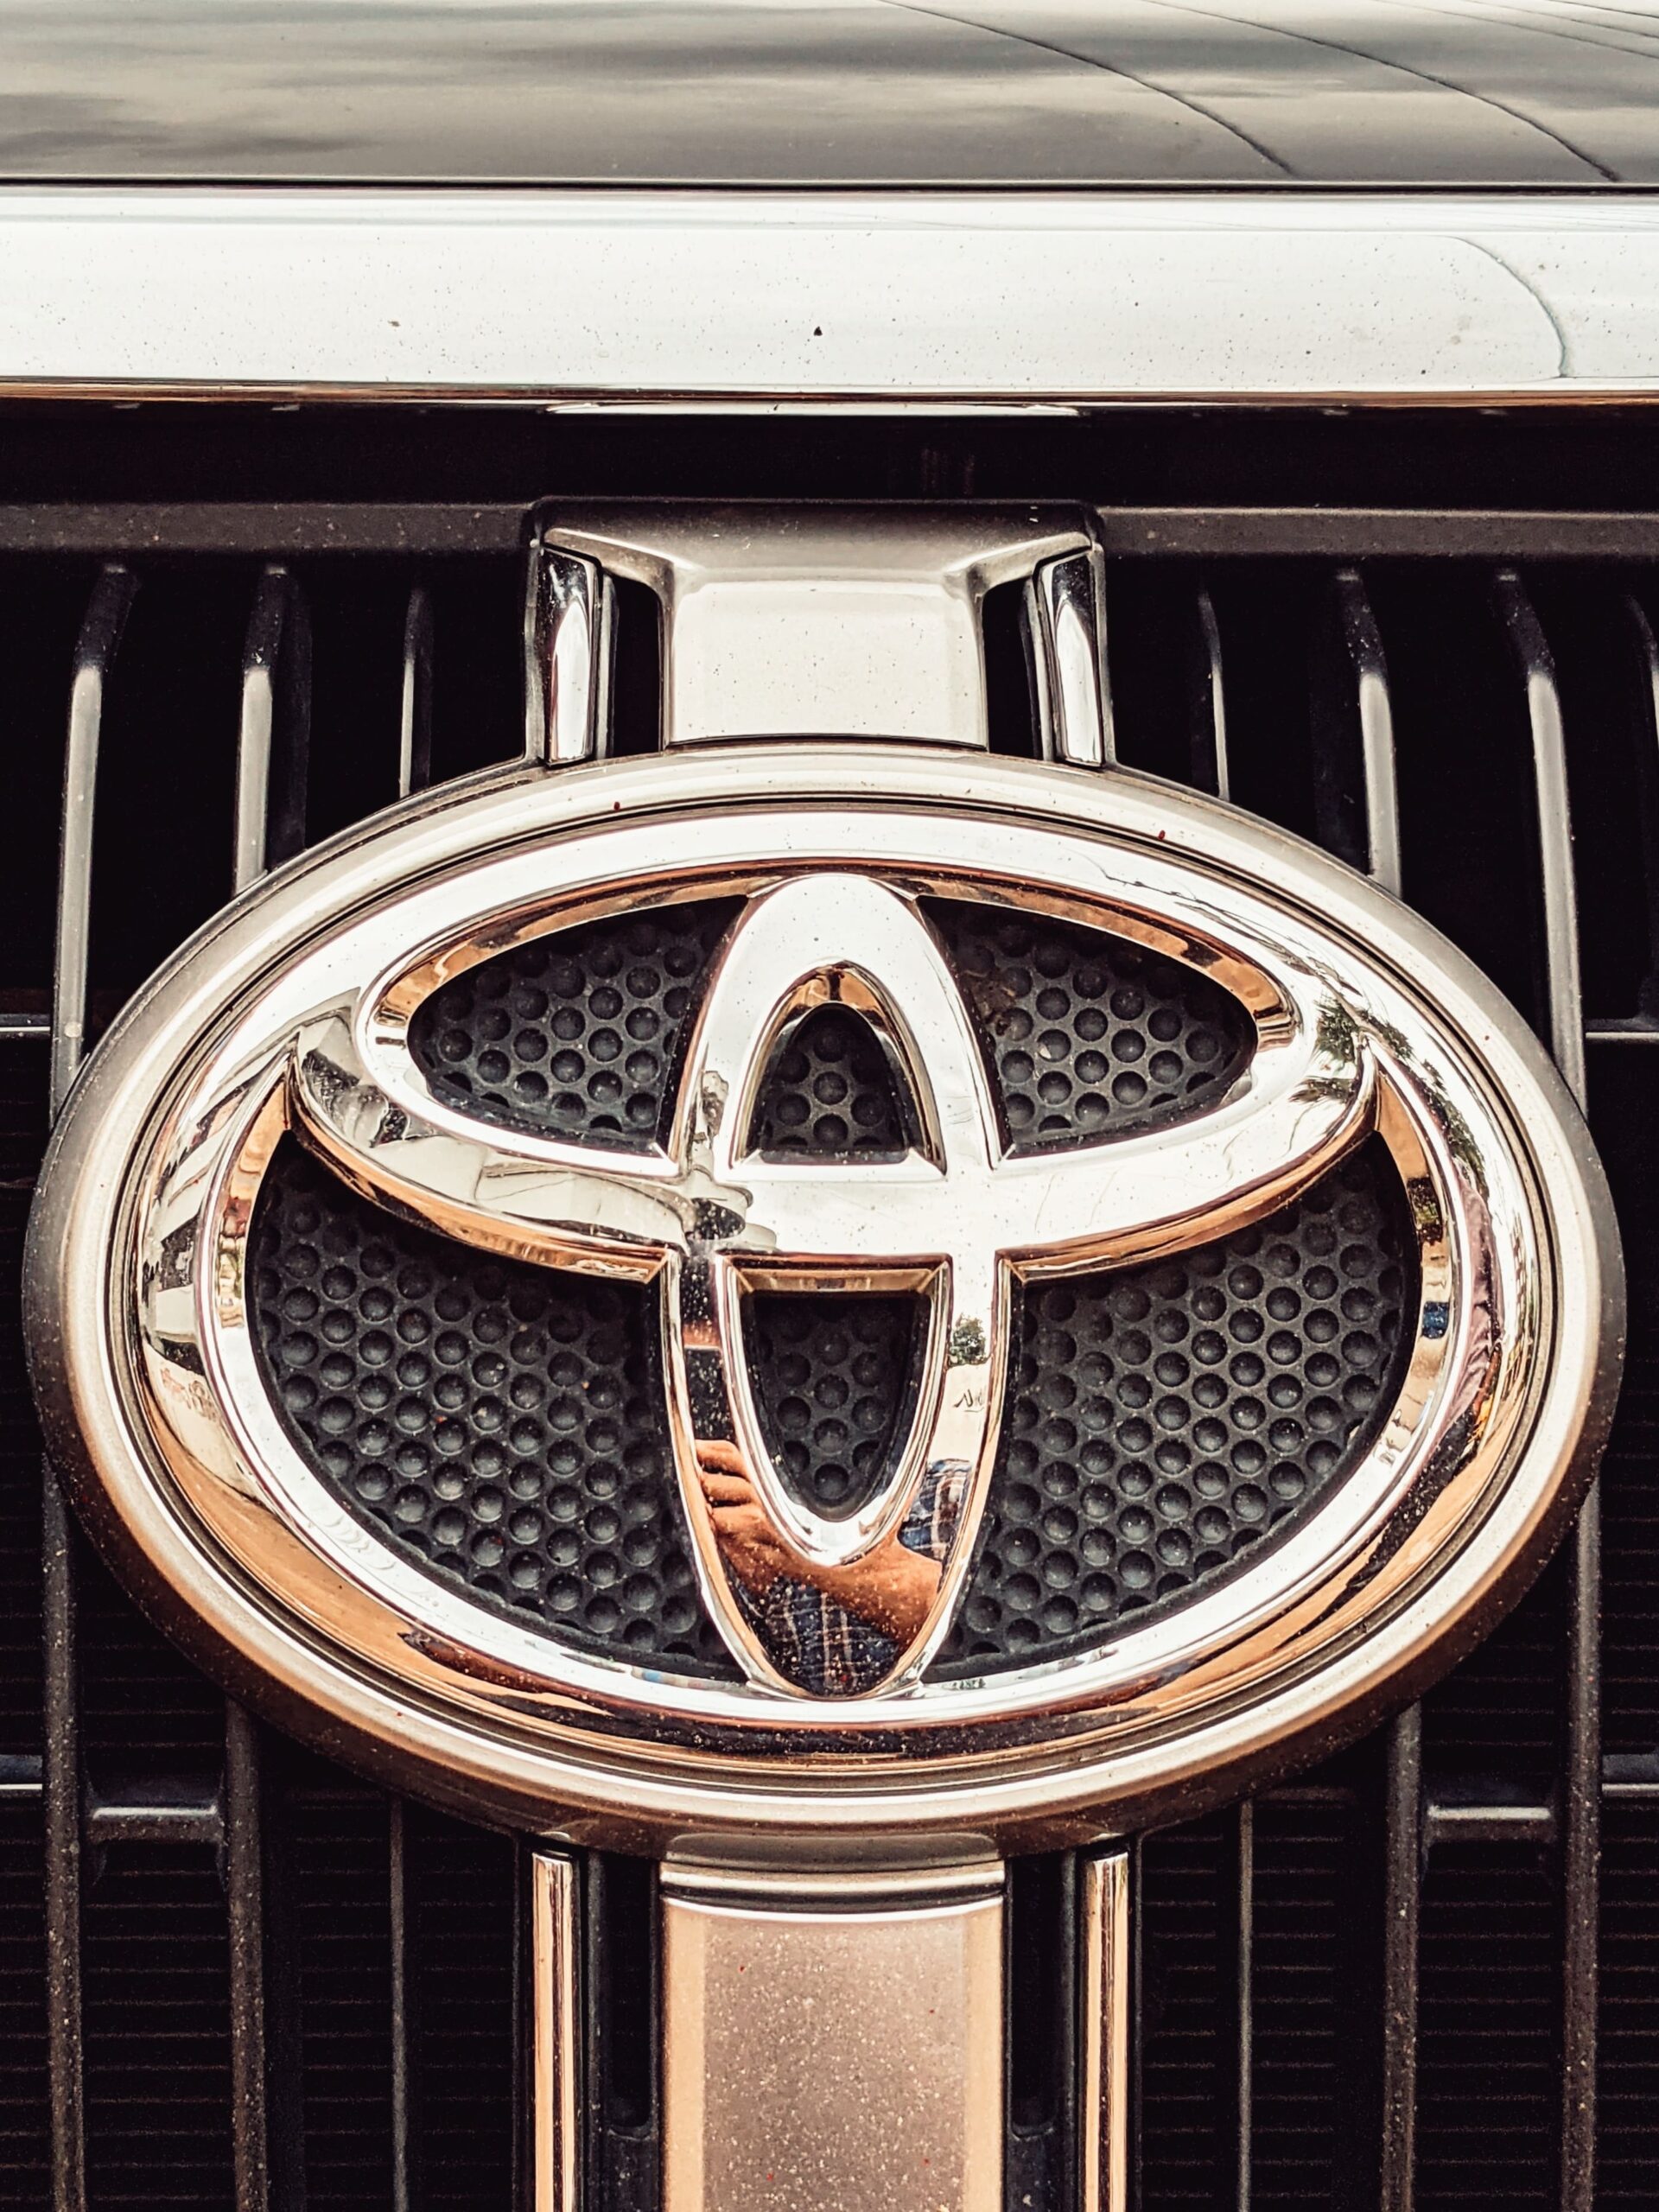 Toyota Sienna Trailer Hitch Installation Cost